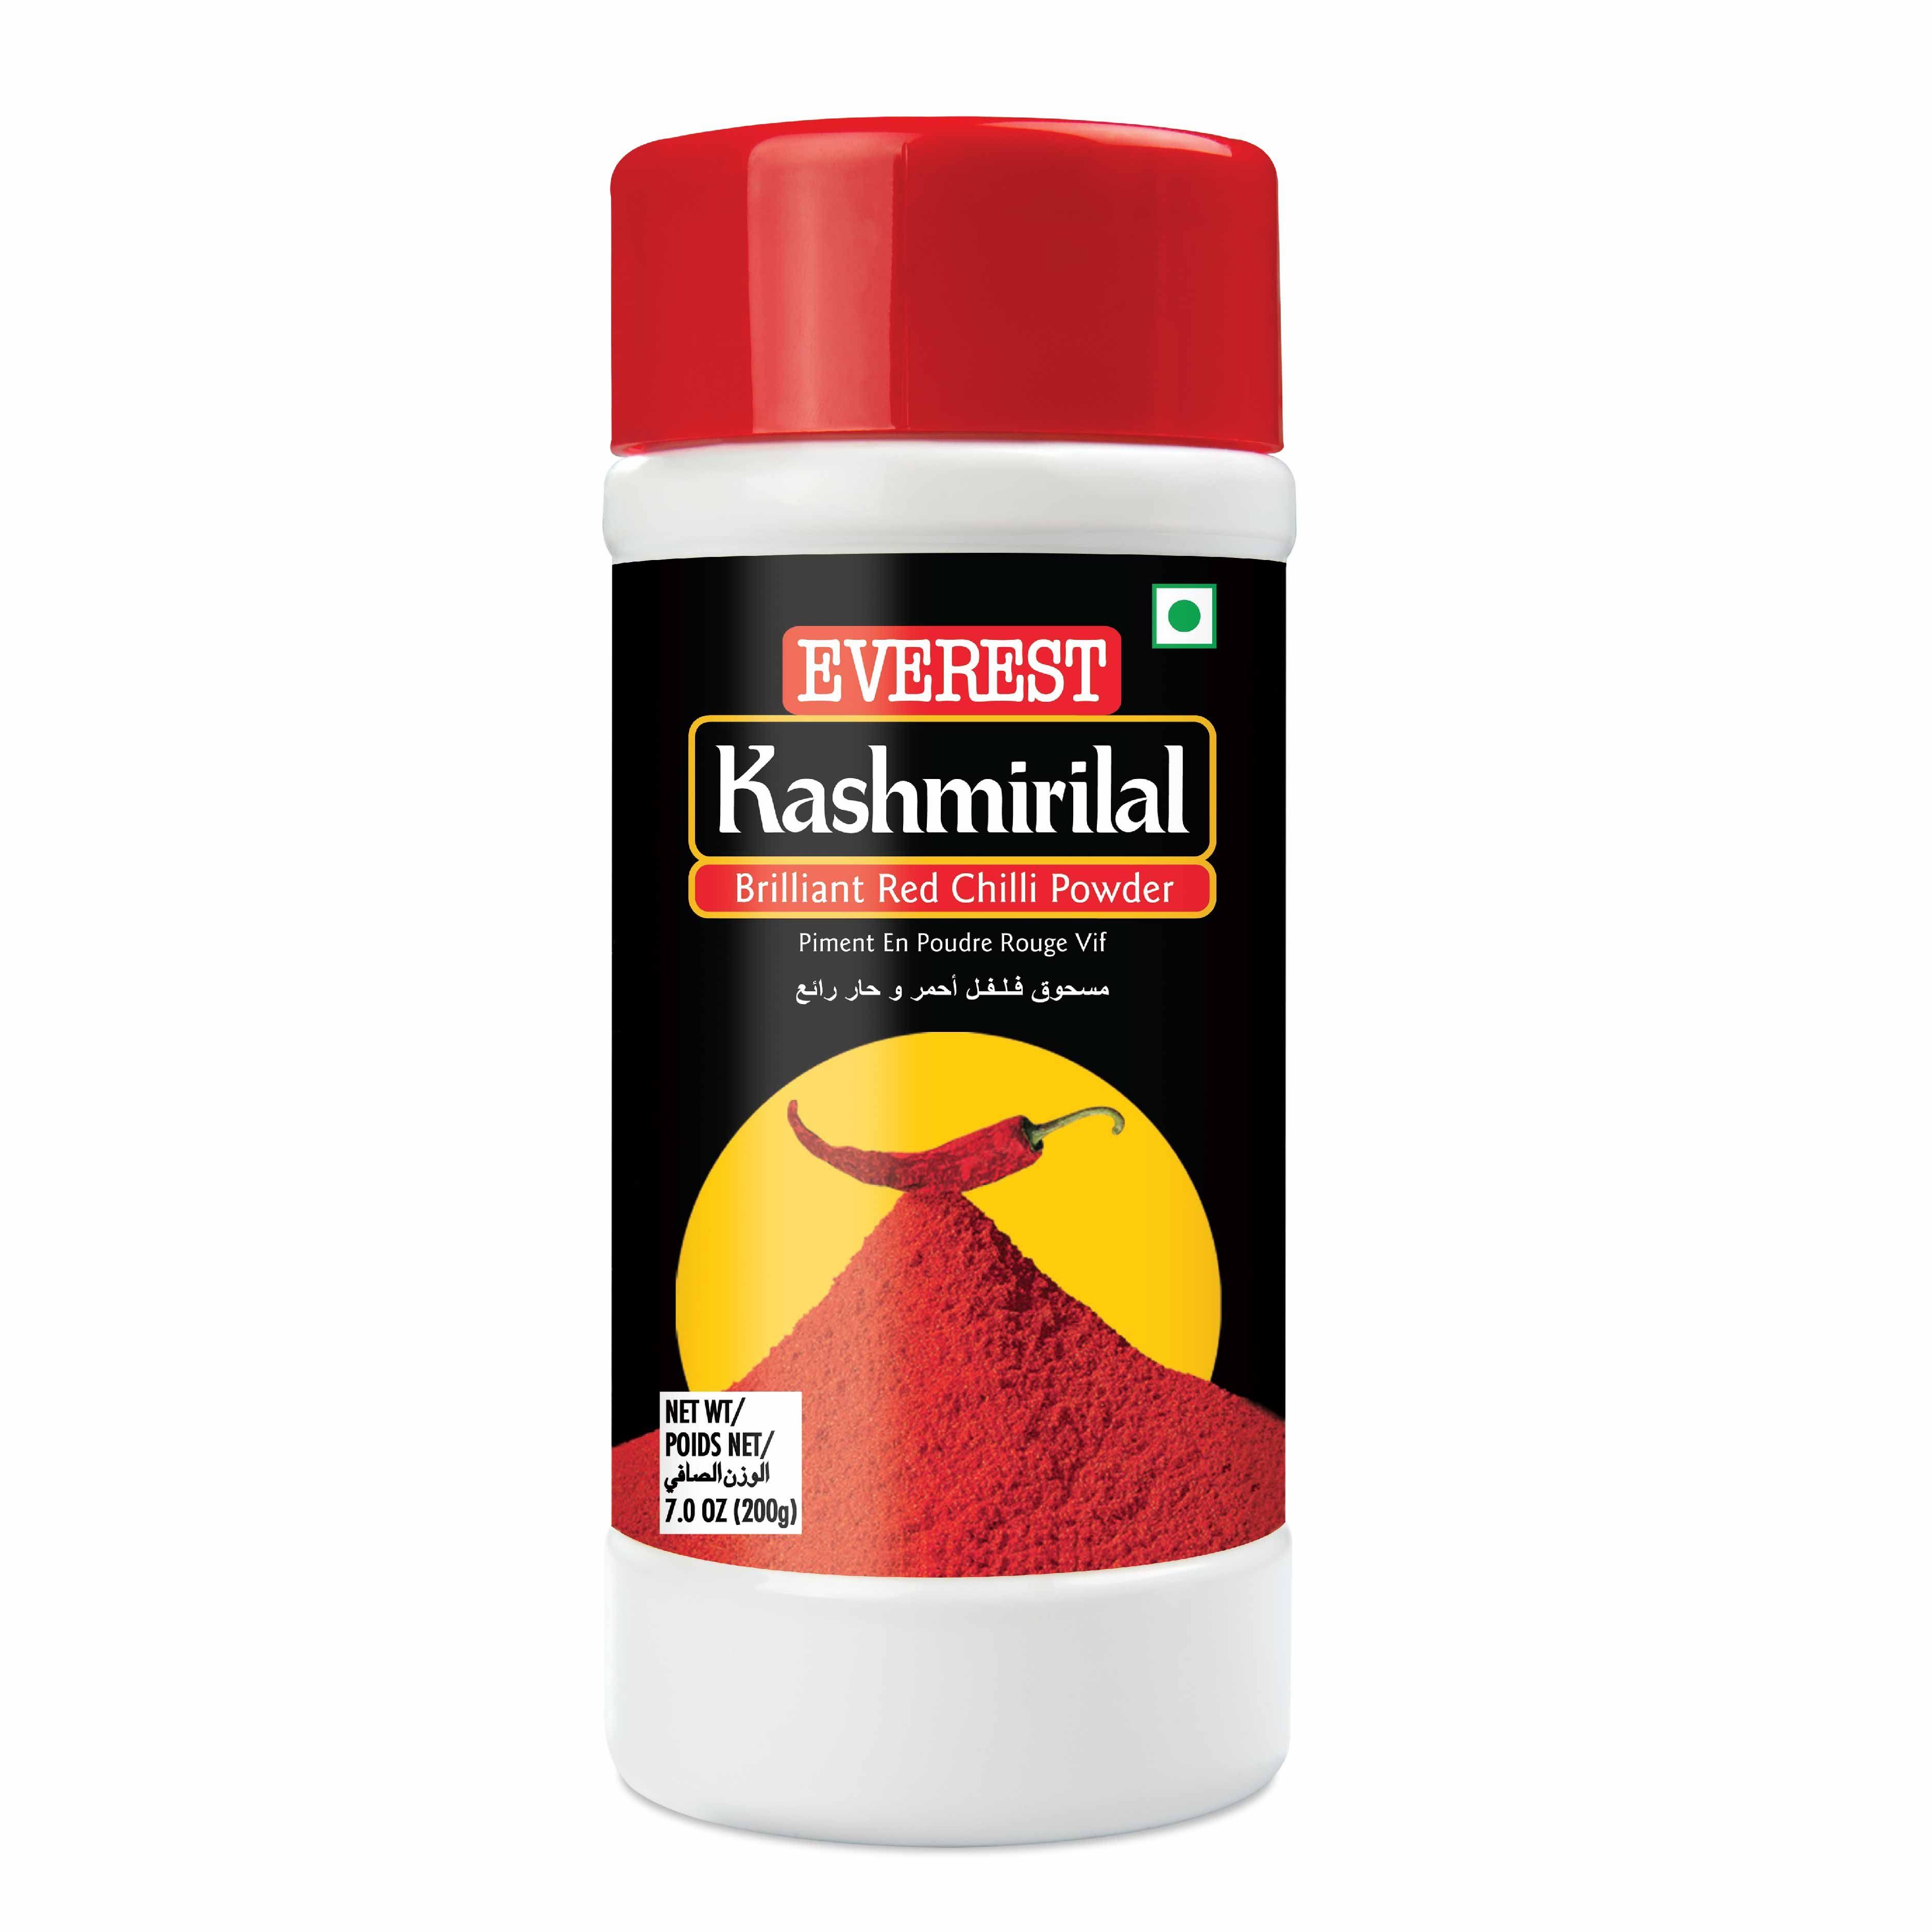 Everest Kashmirilal Red Chilli Powder 200g | Indian Supermarket Online | SaveCo Online Ltd